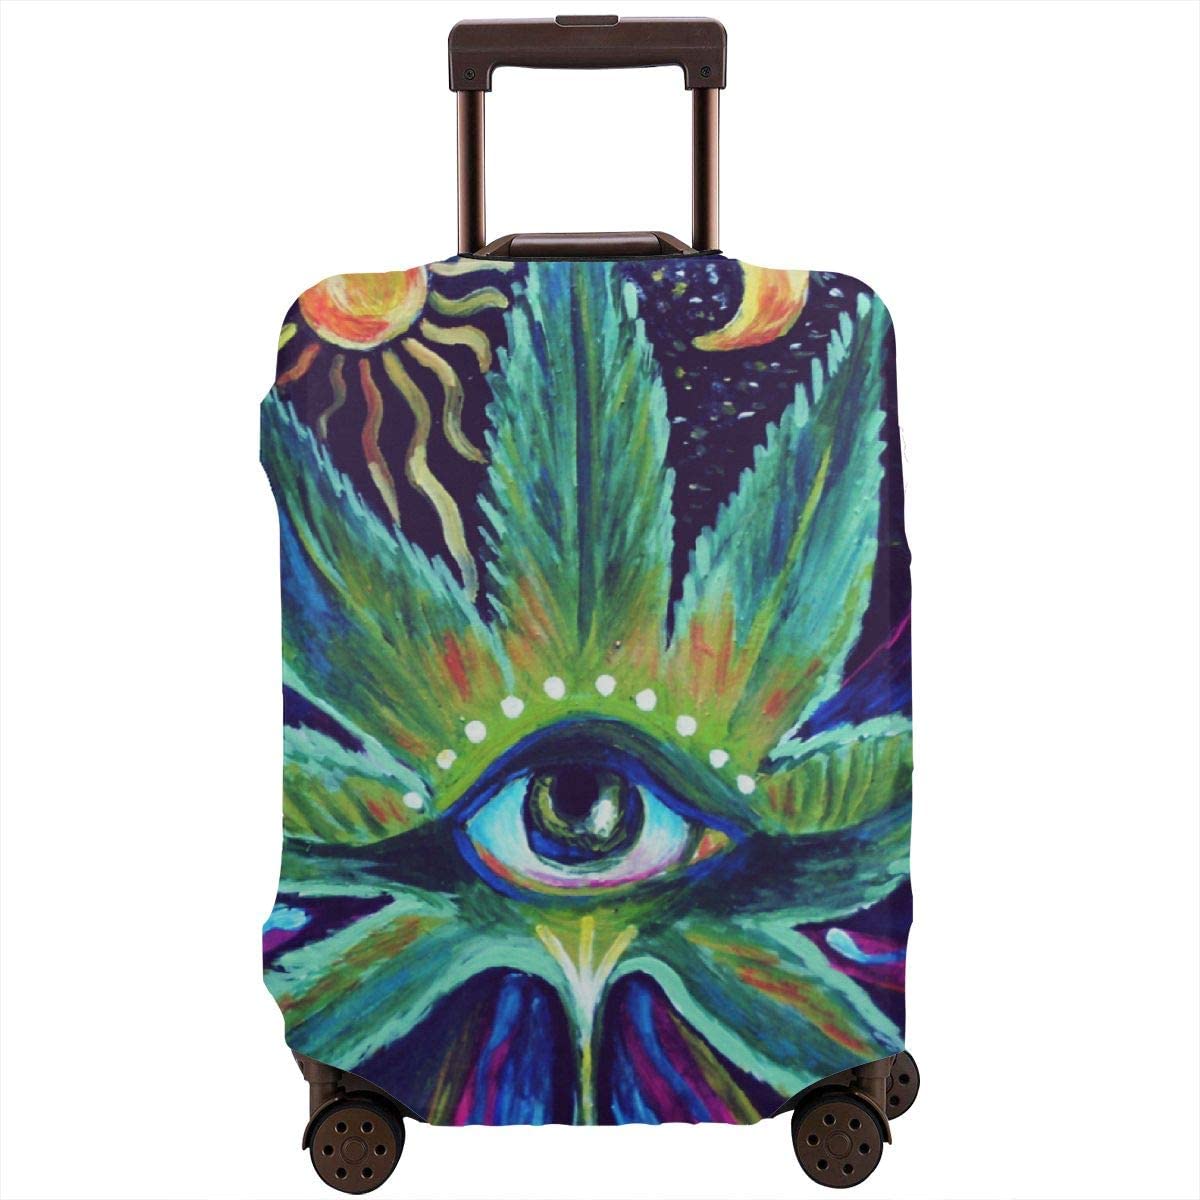 Cannabis Luggage - Third Eye